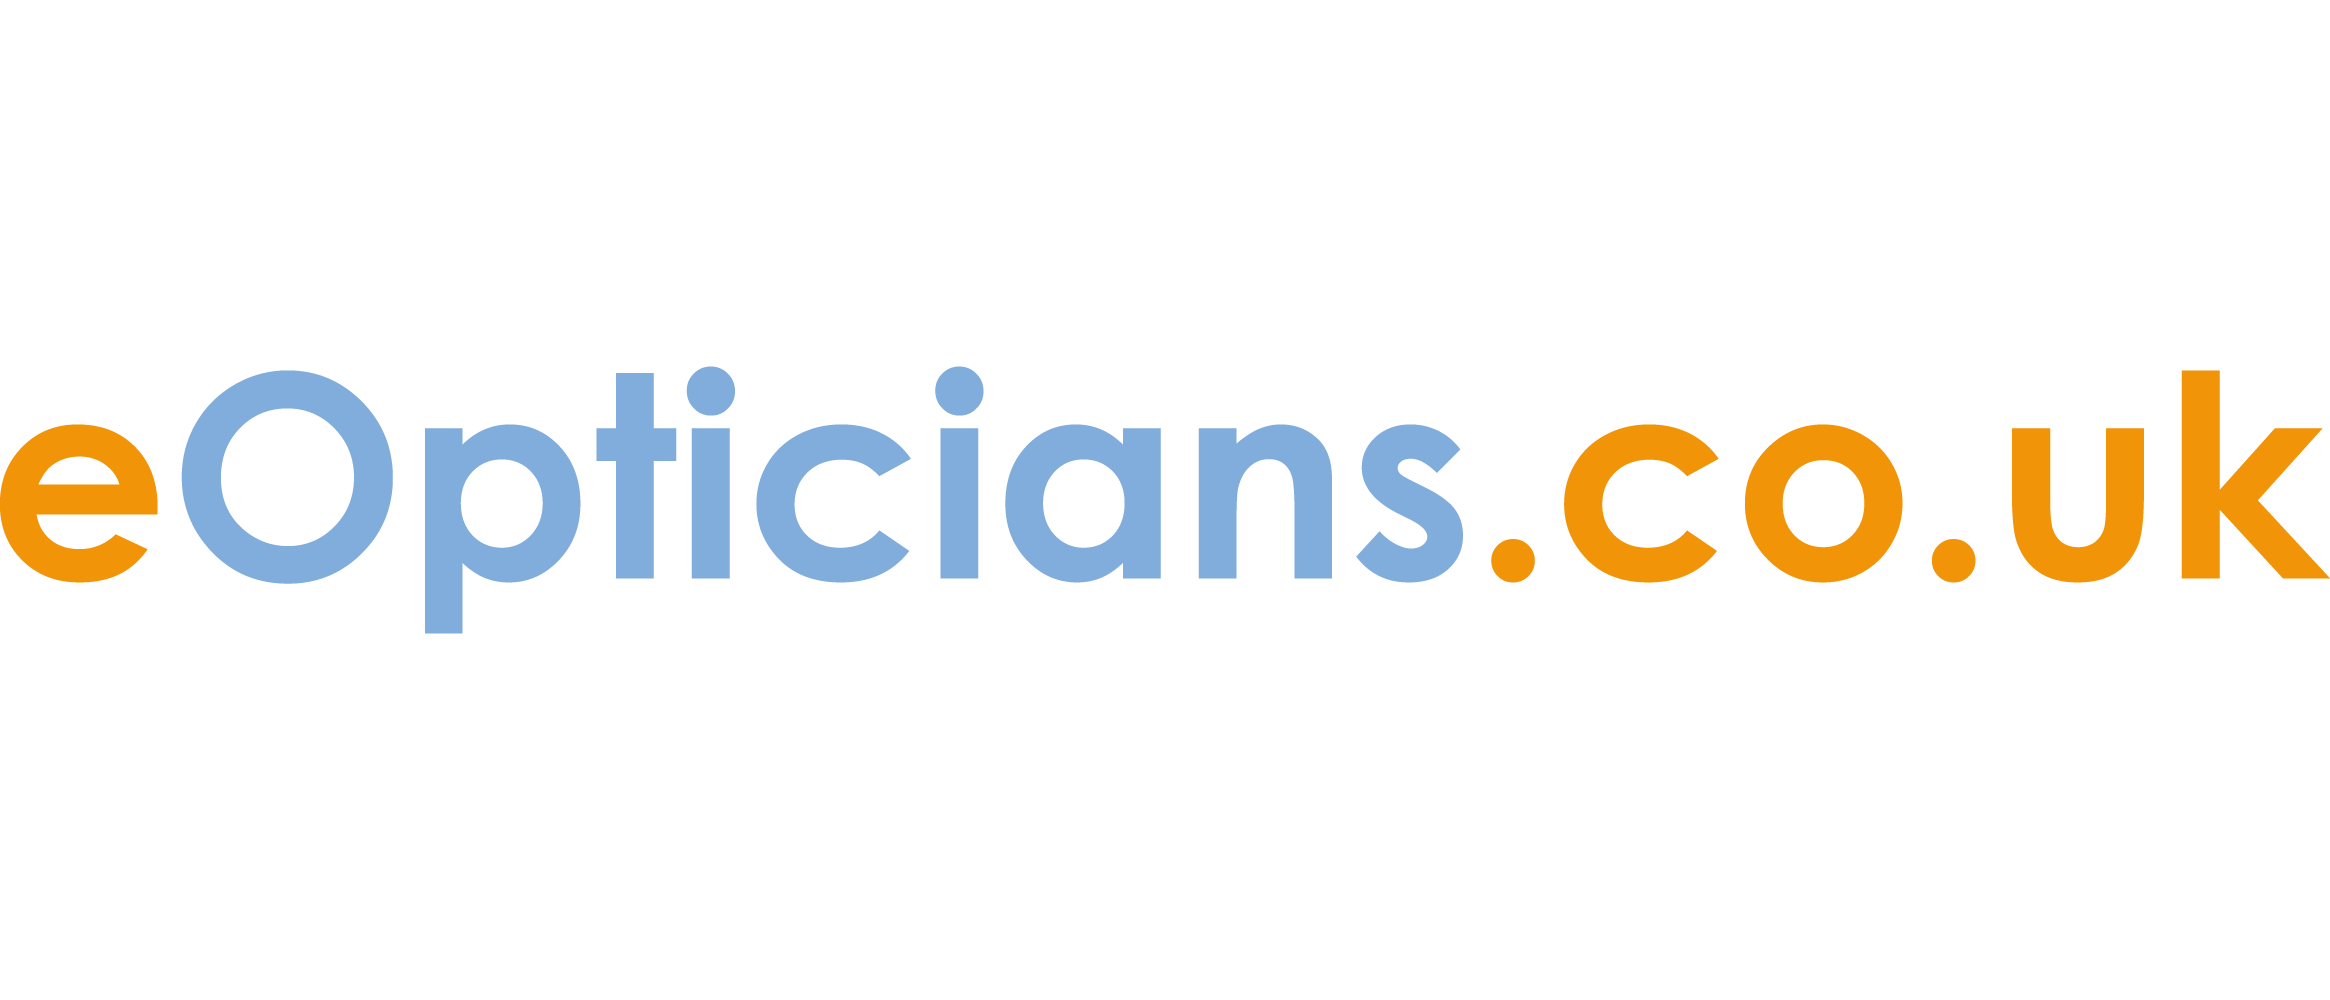 eopticians.co.uk